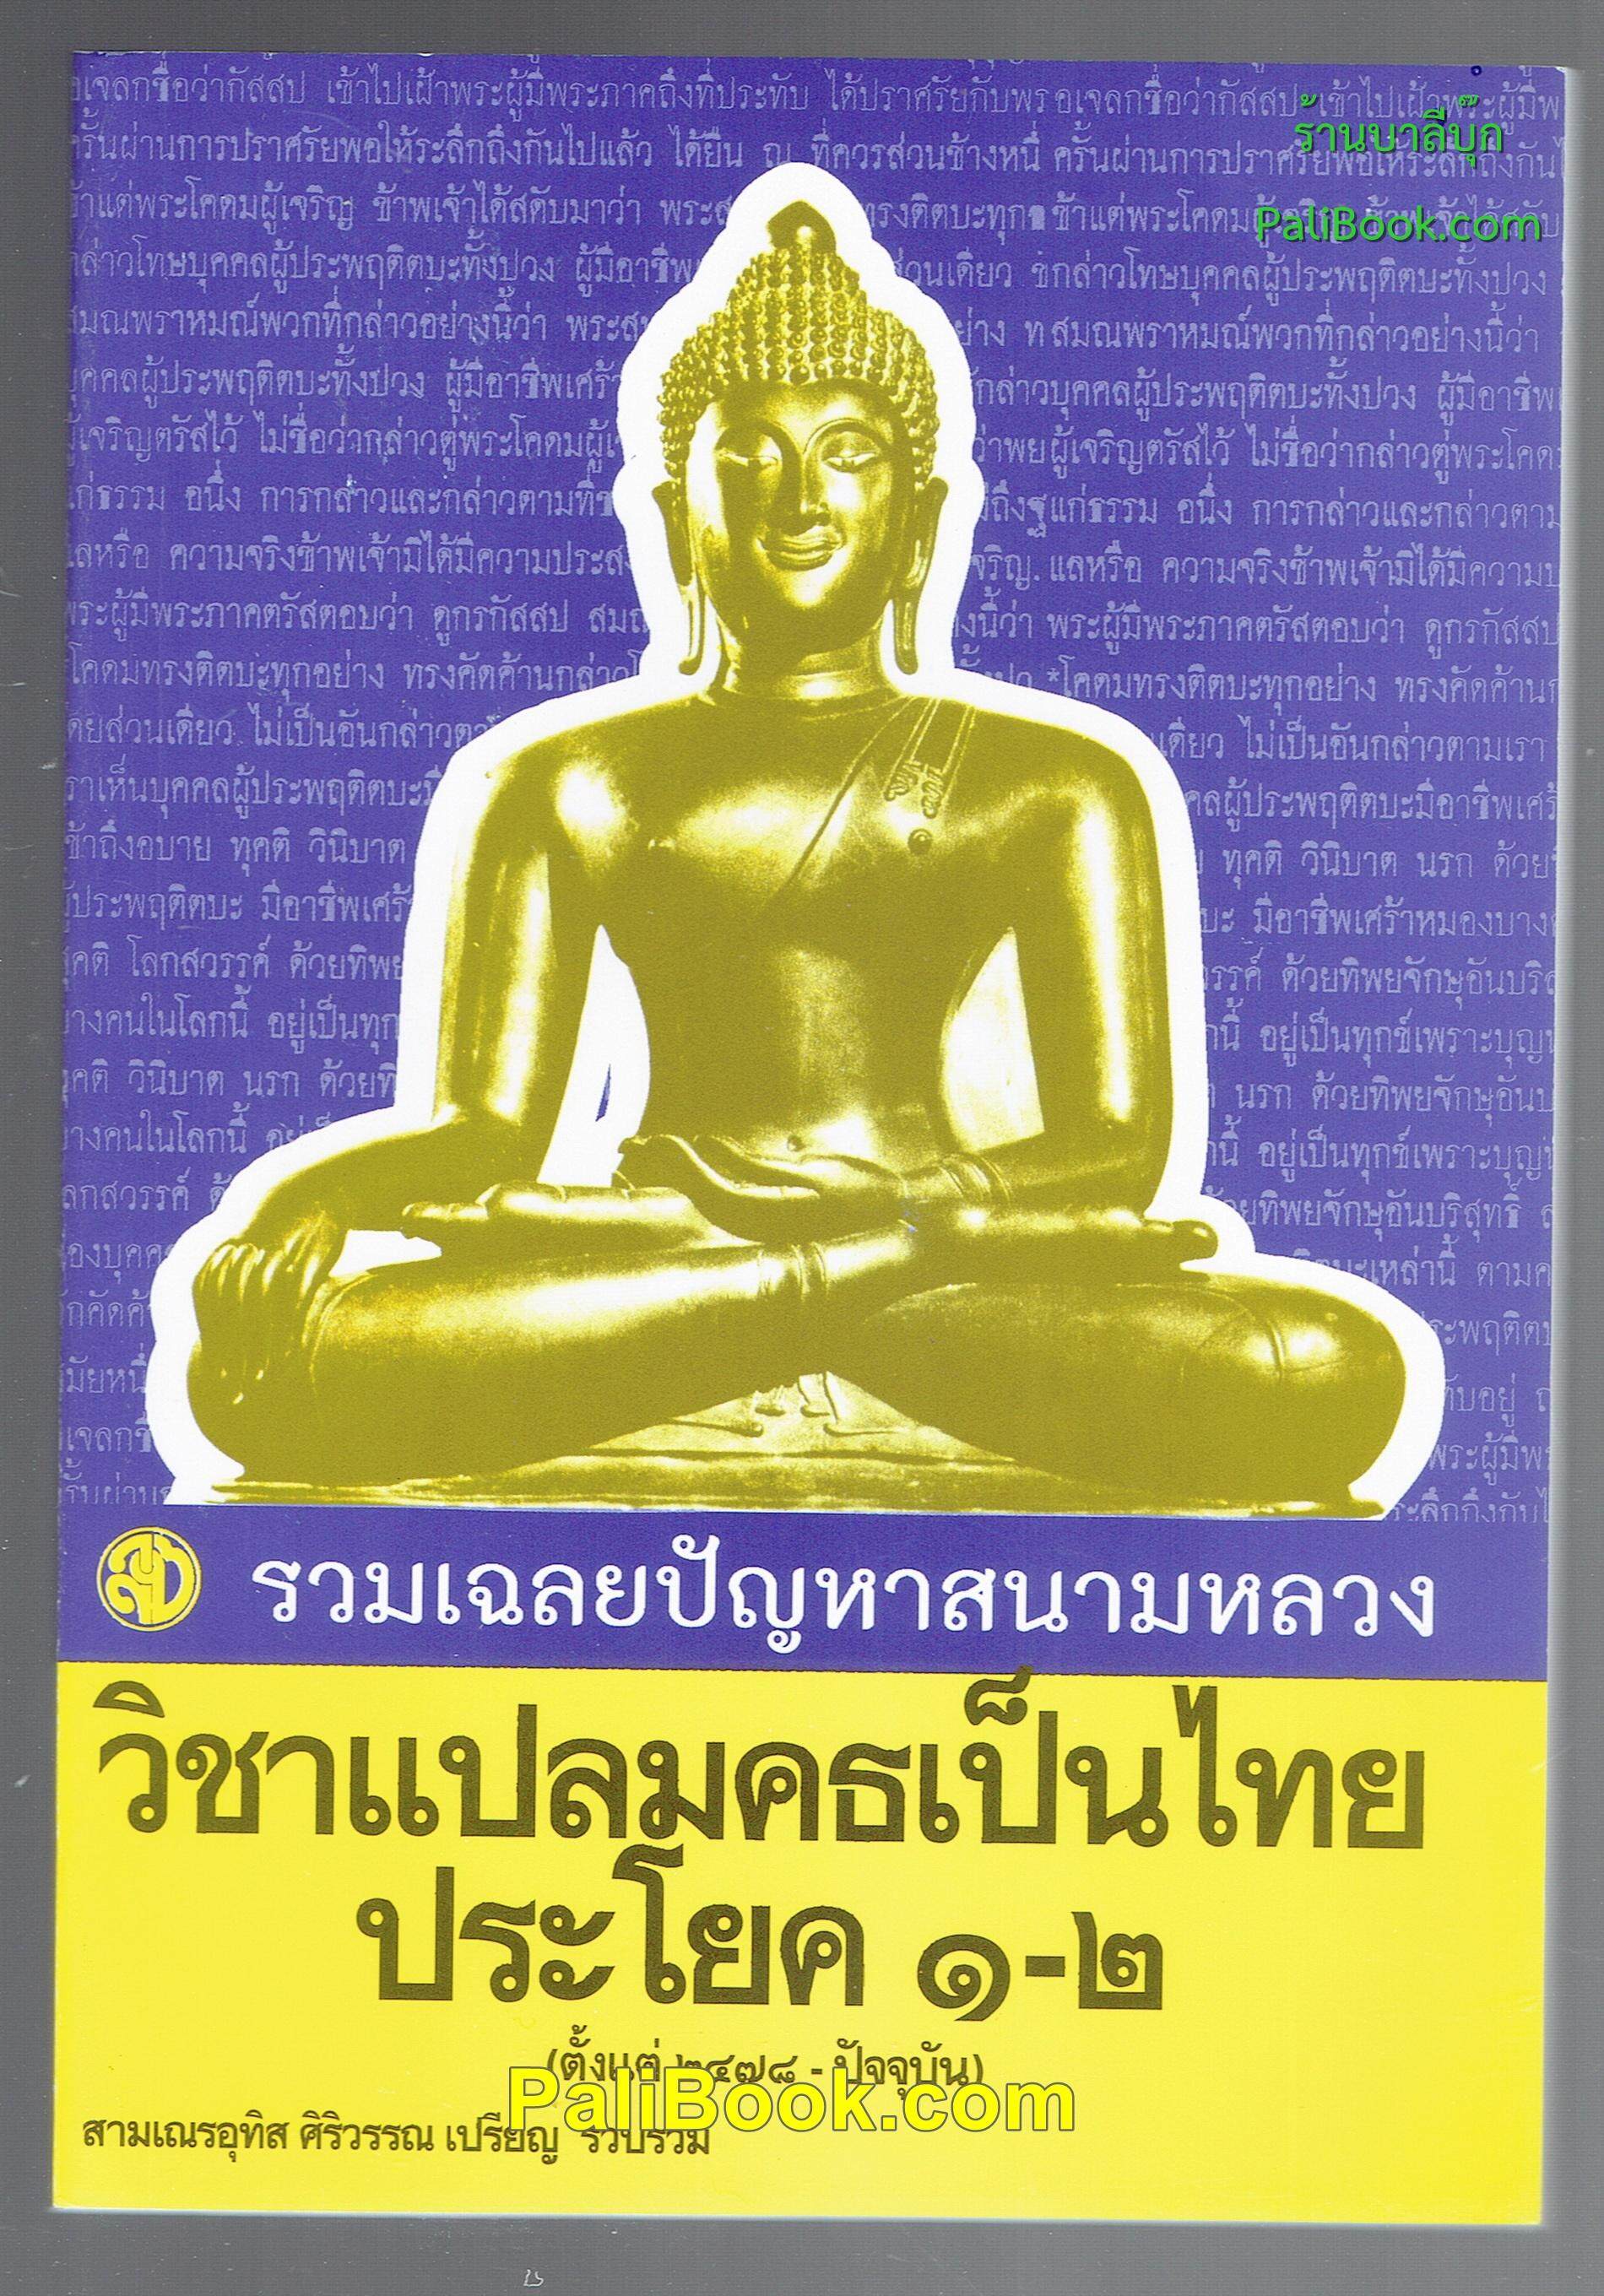 รวมเฉลยปัญหาสนามหลวง วิชาแปลมคธเป็นไทย ประโยค 1-2 - สามเณรอุทิส ศิริวรรณ เปรียญ - หนังสือบาลี ร้านบาลีบุ๊ก Palibook